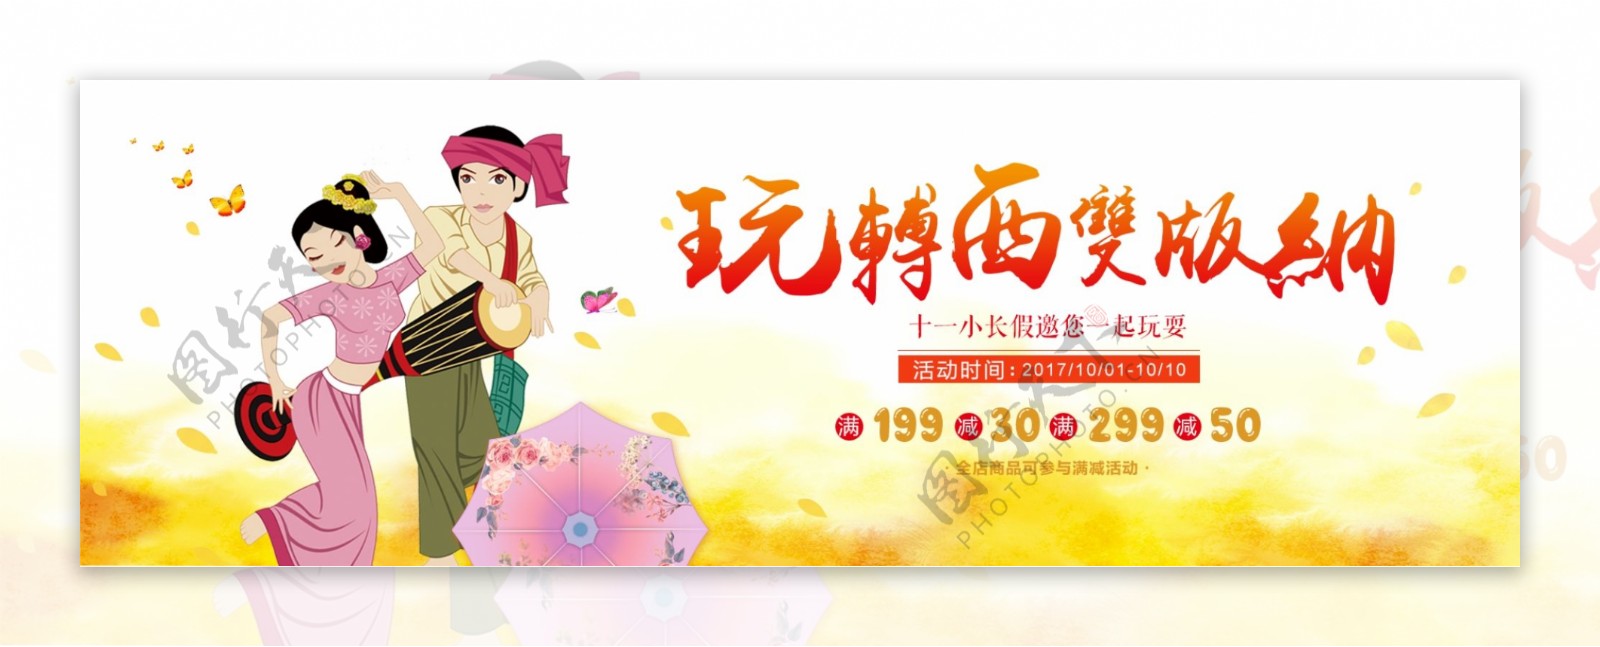 旅游度假民族国庆出游季淘宝电商海报banner